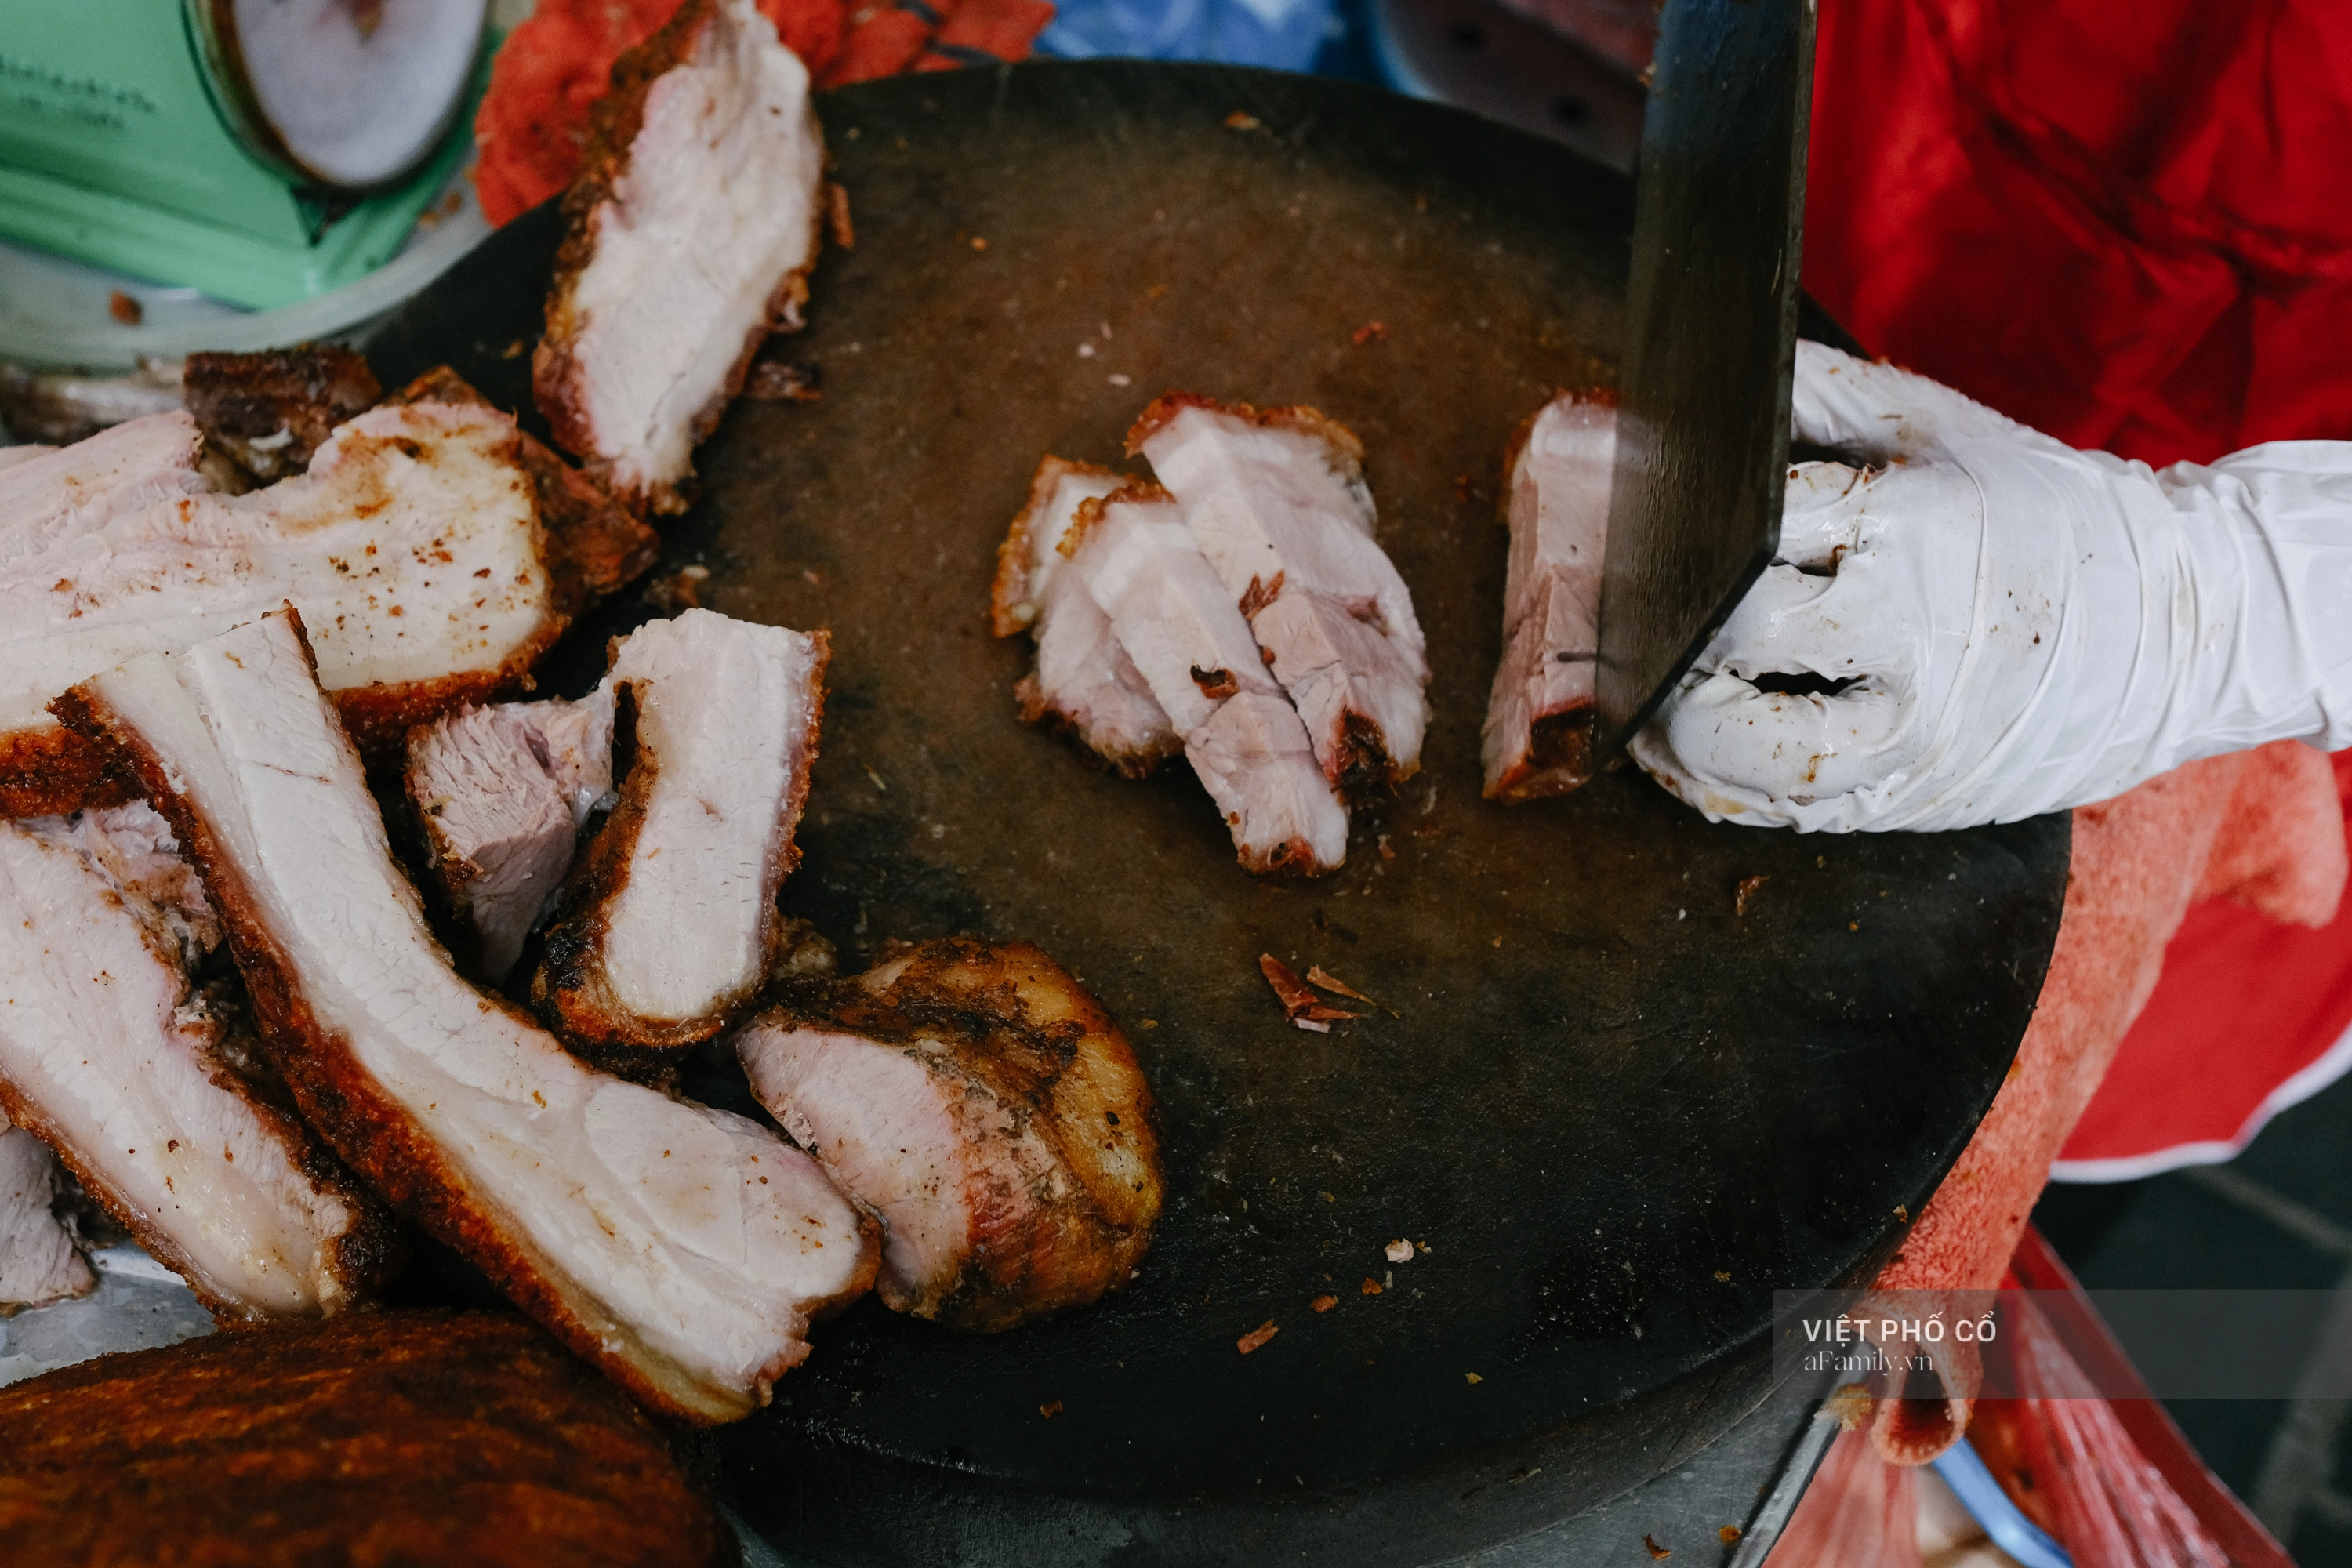 Hàng thịt quay vỉa hè 30 năm tuổi ngon nức tiếng ở Hà Nội, không biển hiệu nhưng chiều nào cũng nườm nượp khách xếp hàng - Ảnh 5.